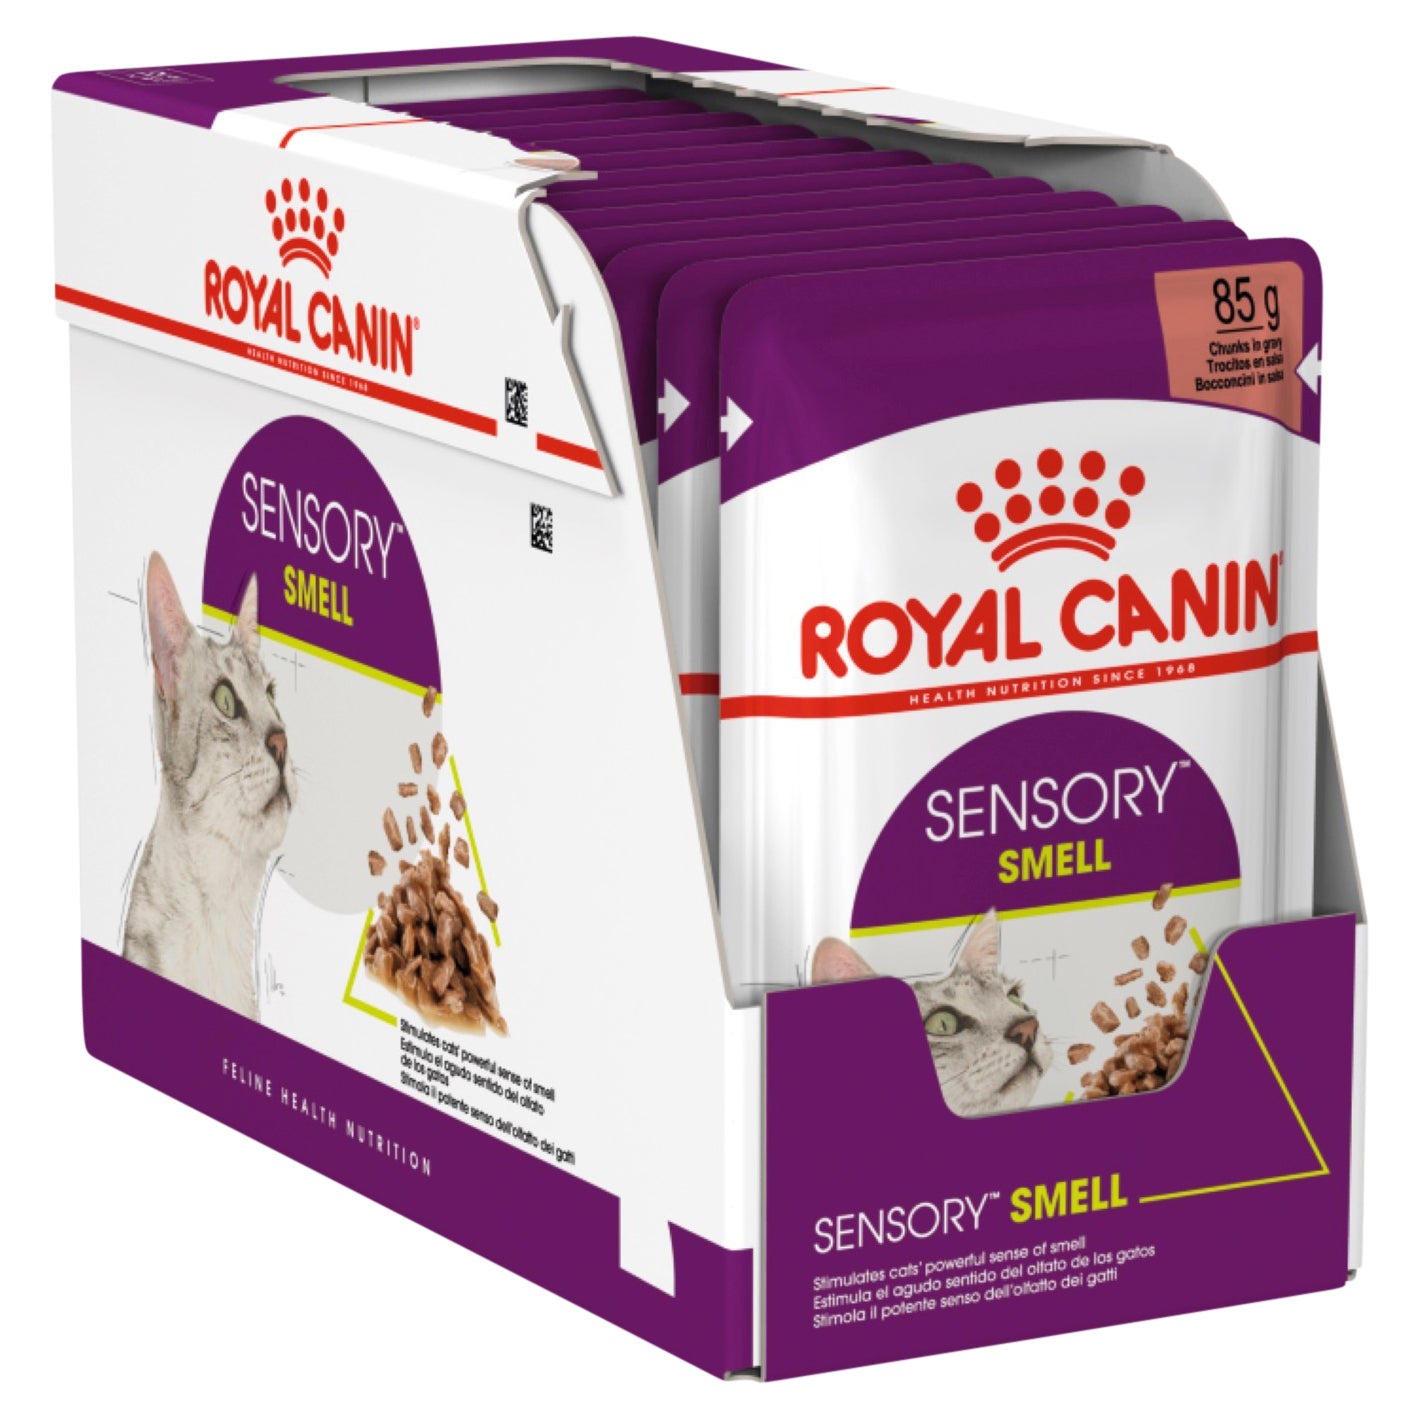 Royal Canin Sensory Smell Gravy 85g